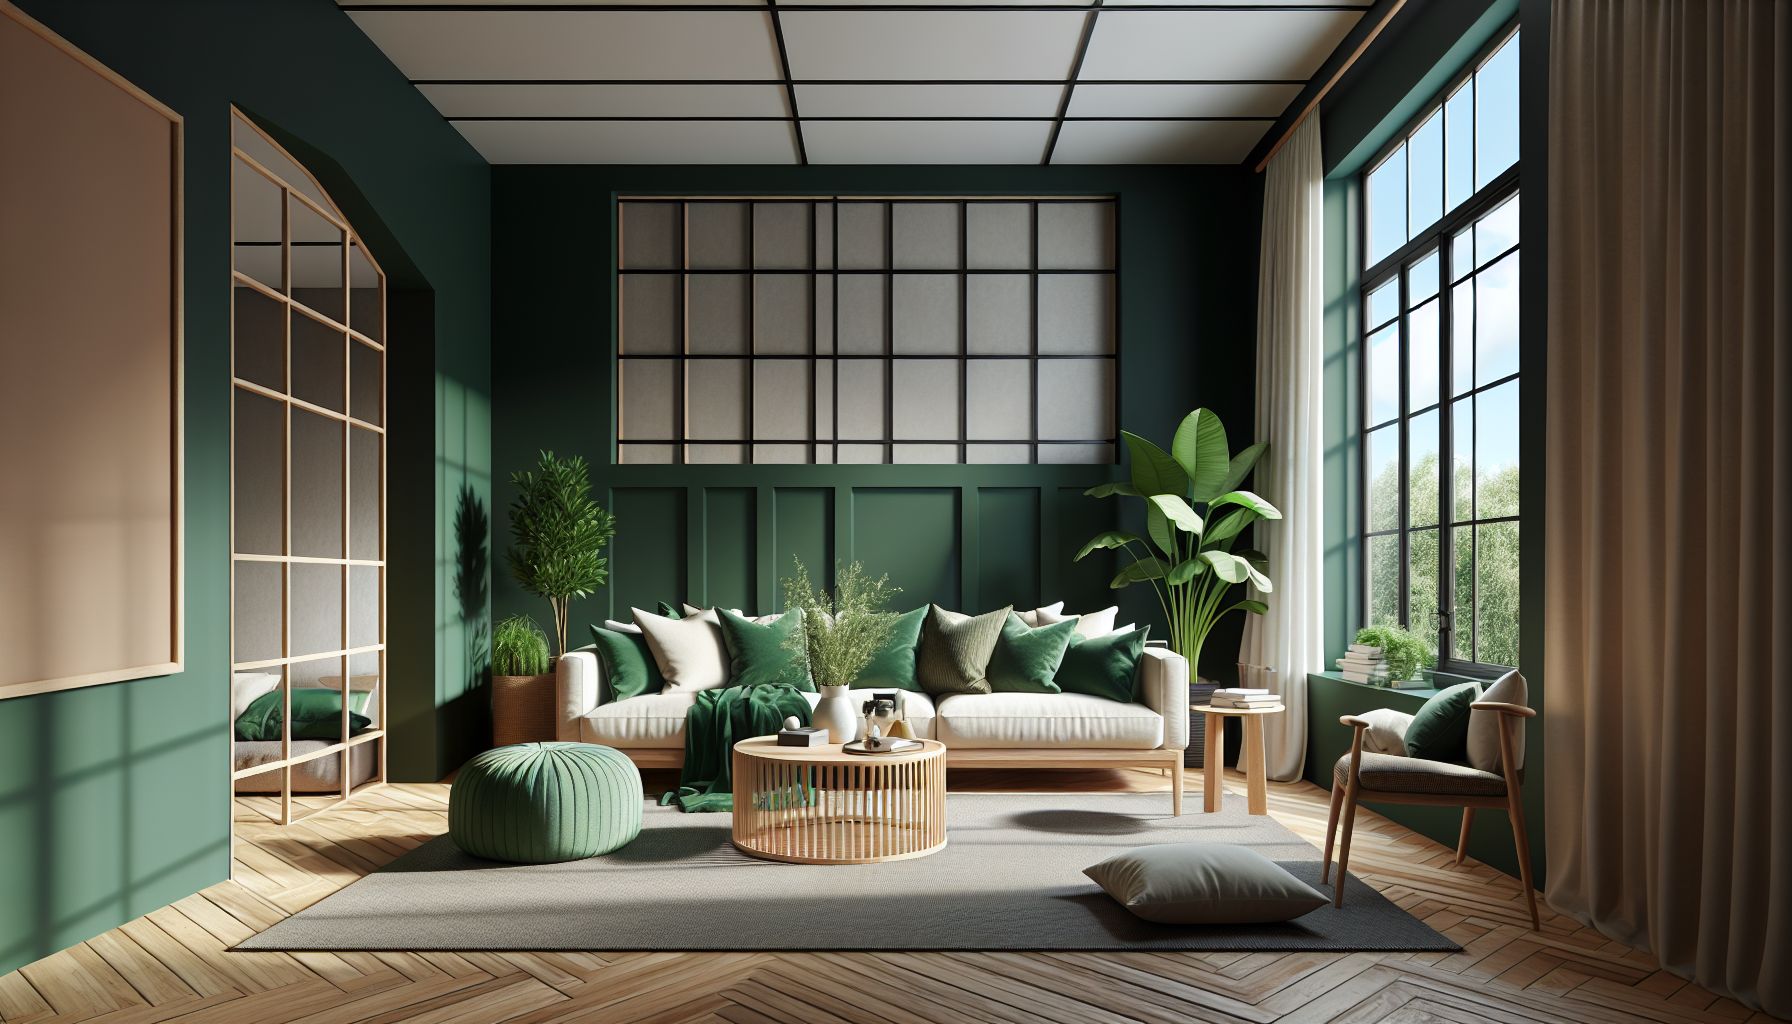 Wohnzimmer in Grün: Ideen und Inspiration- Wähle grüne Akzentwände für Tiefe